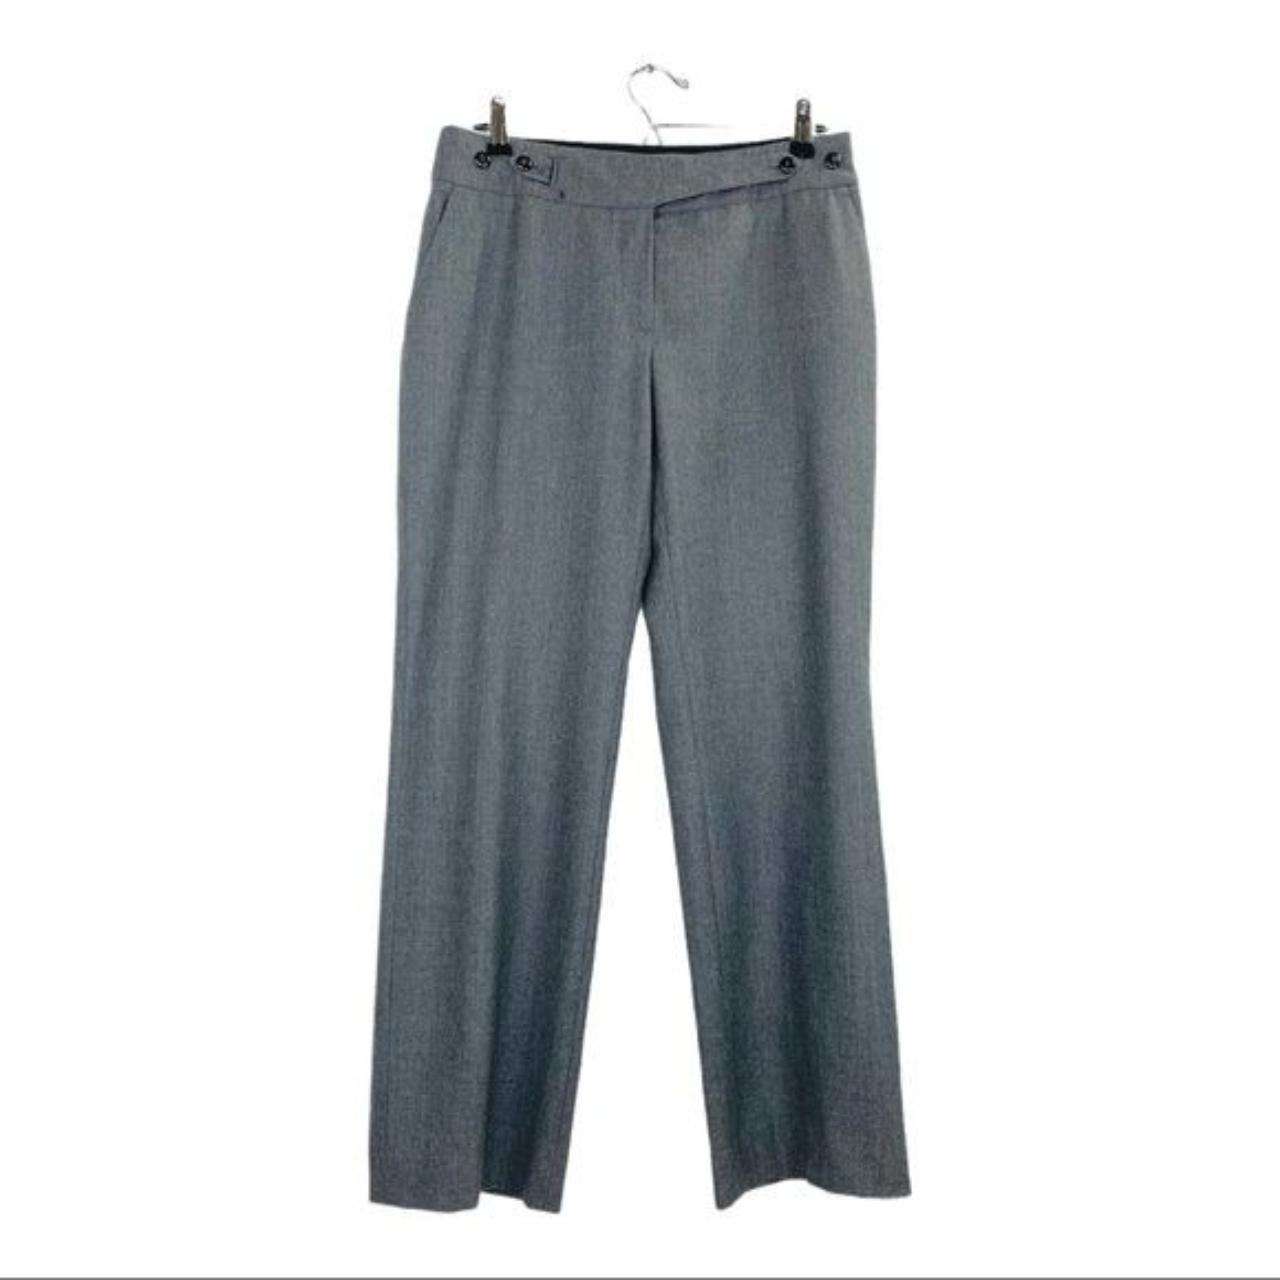 Armani Collezioni Gray Pants Women Slacks Antinea... - Depop